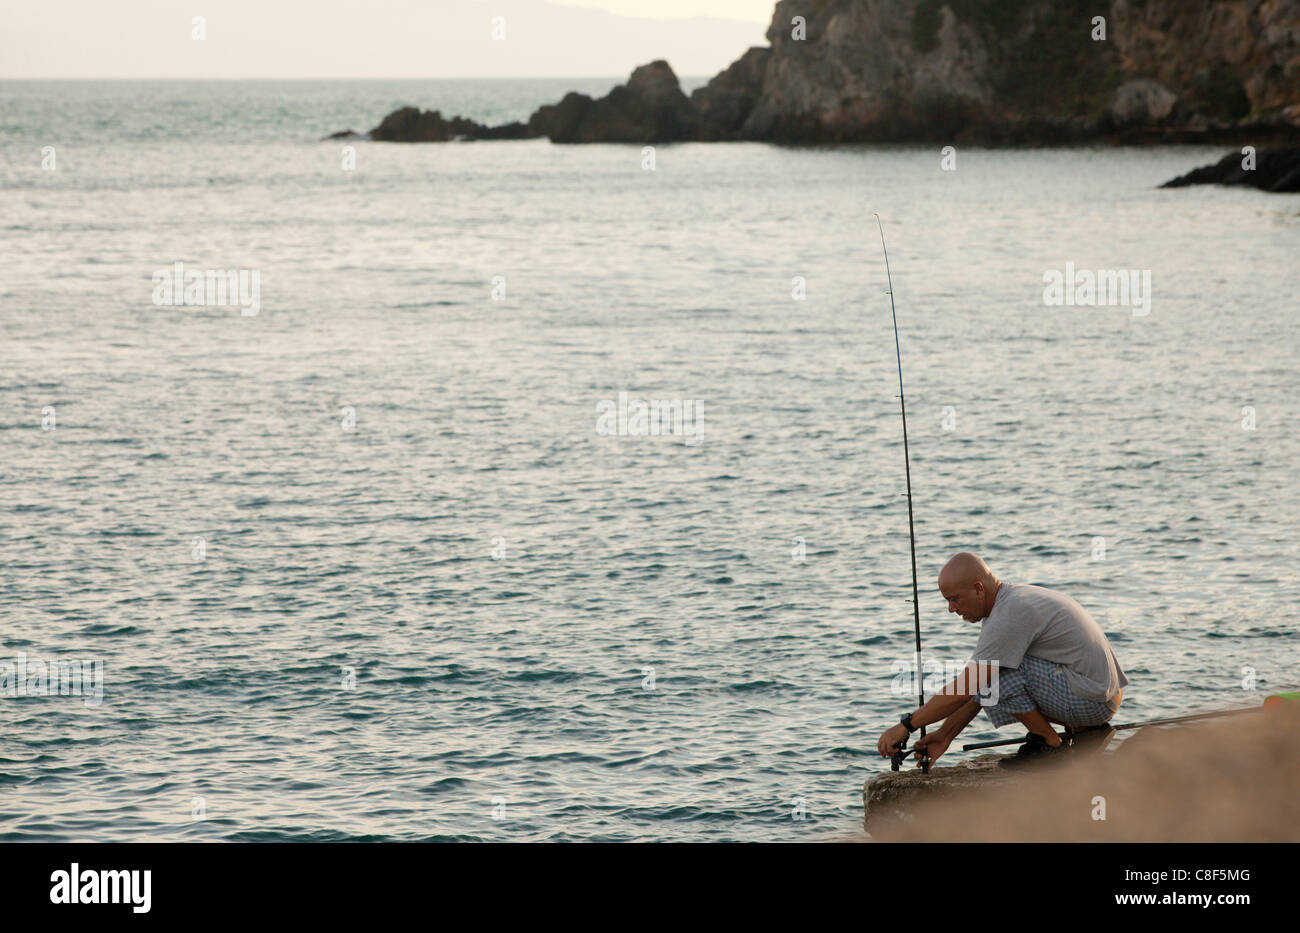 Un homme la pêche au mur du port. Talamone, Toscane, Italie. Banque D'Images